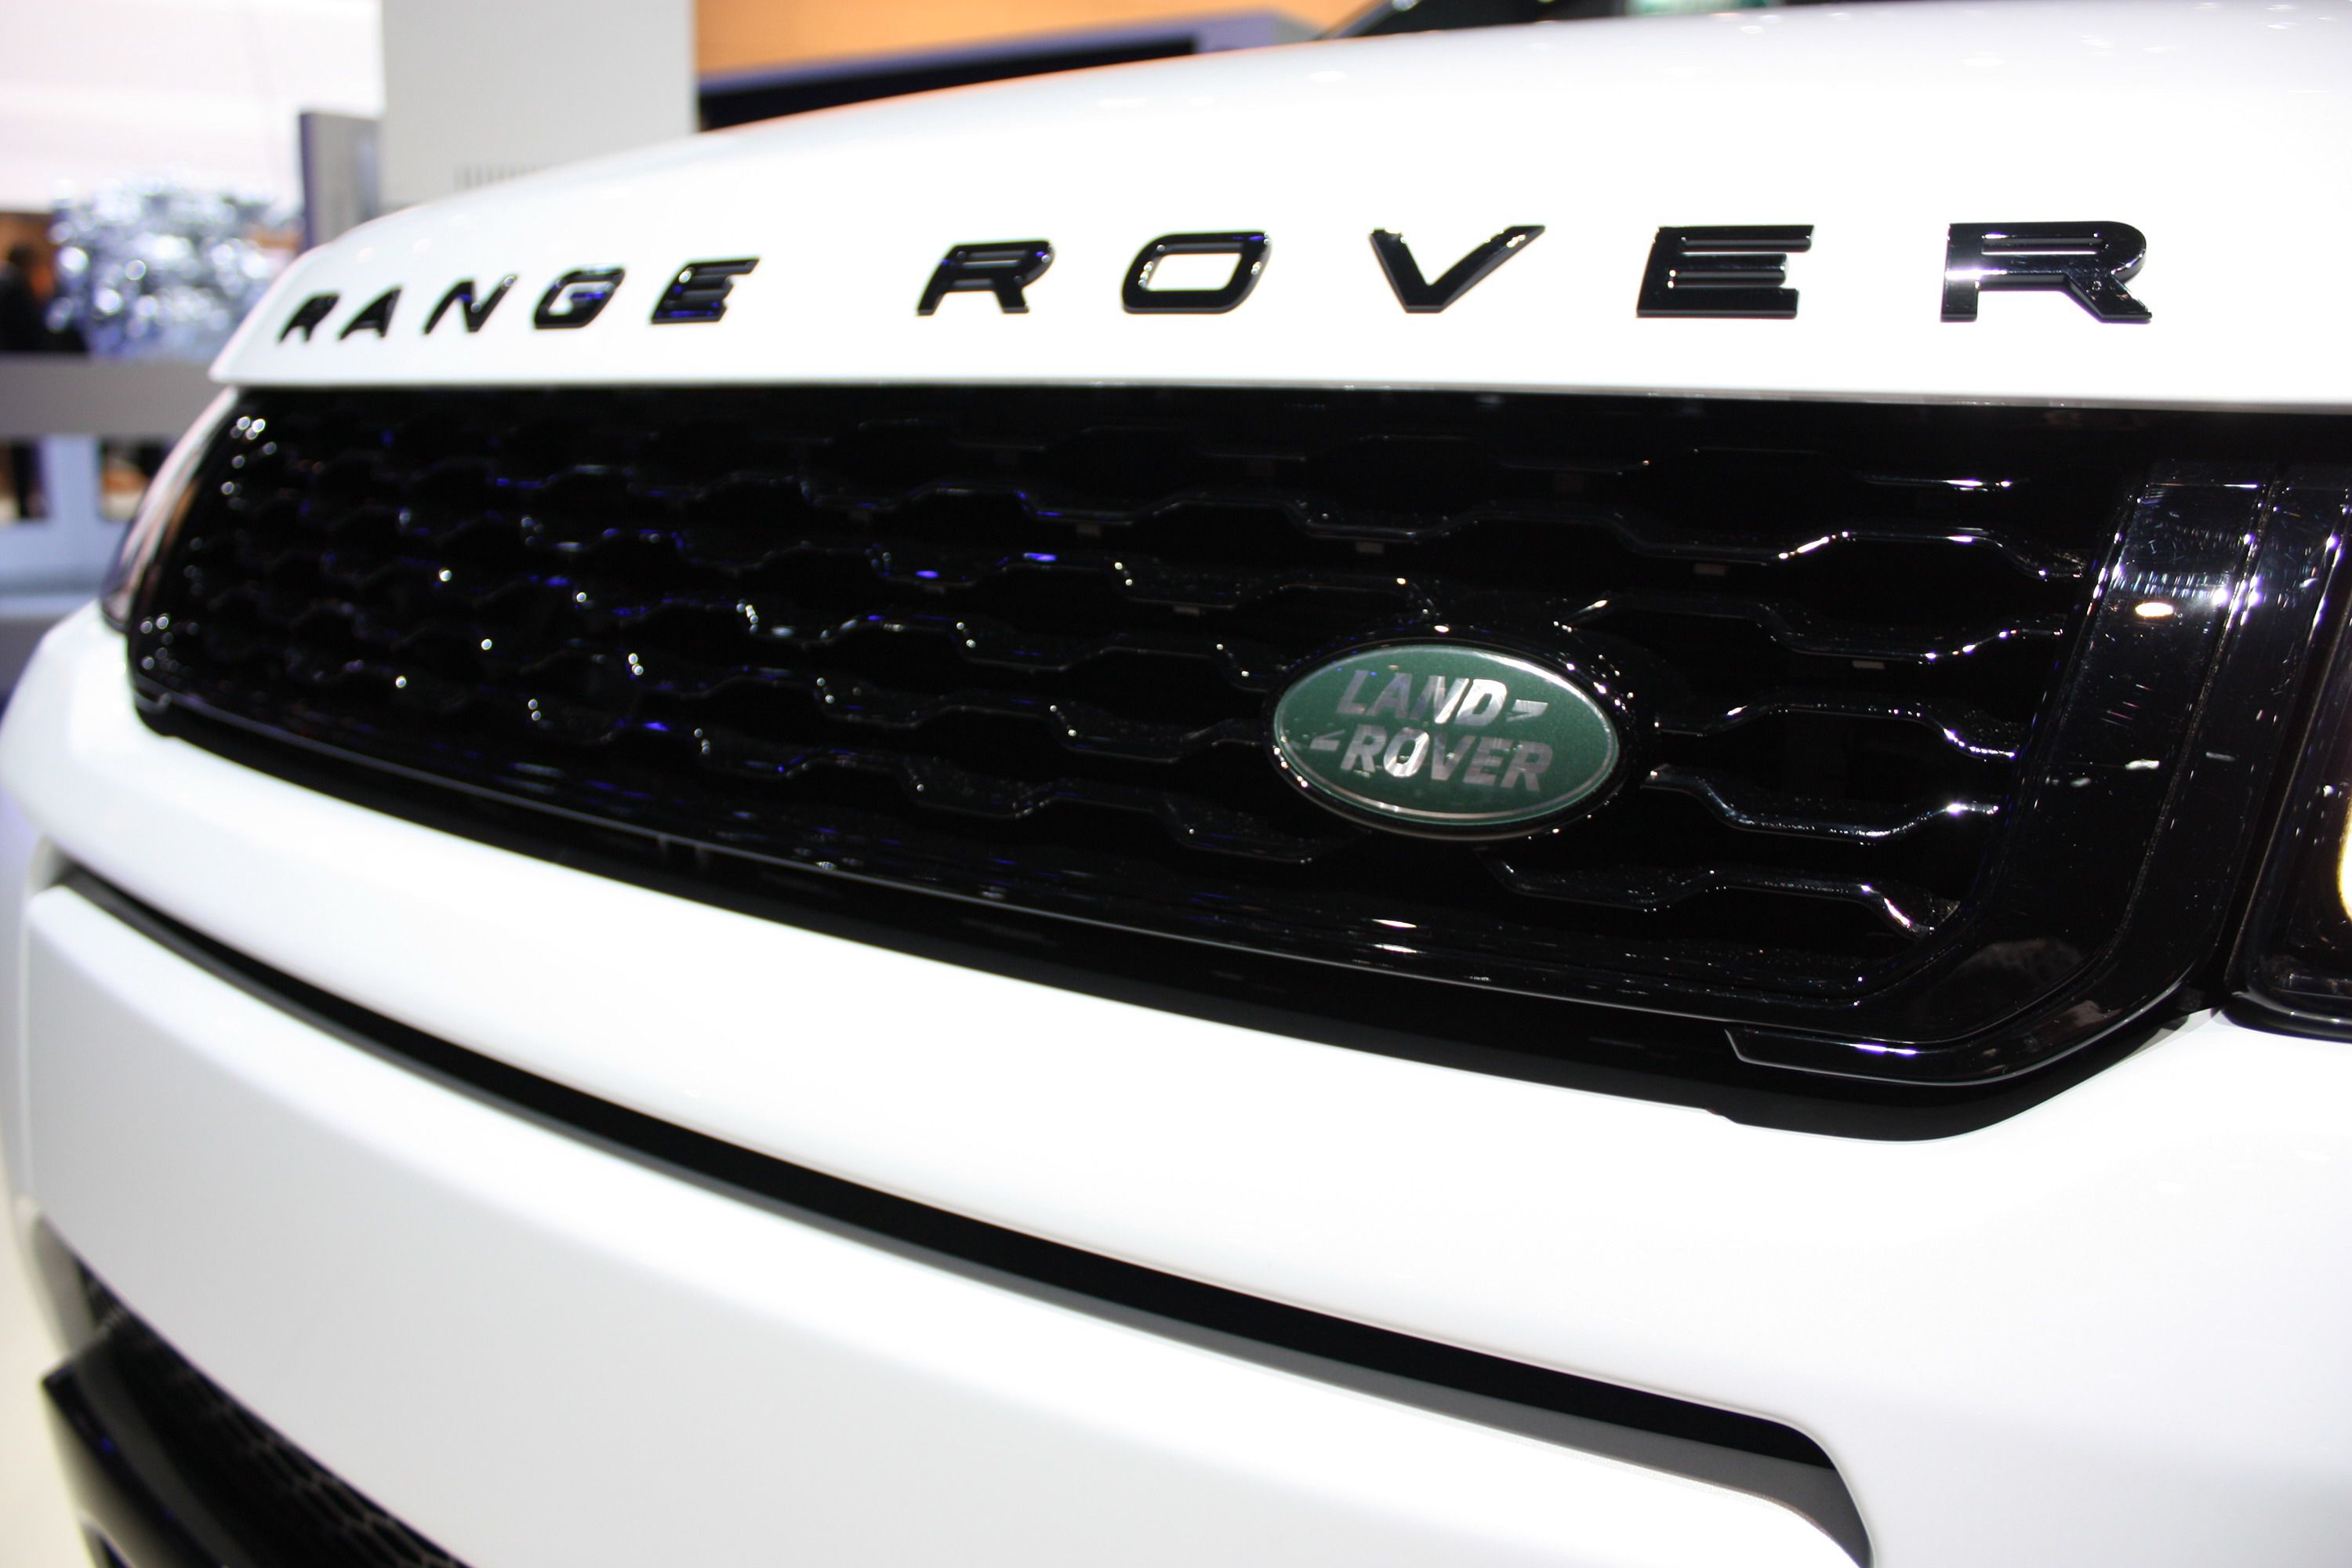 2017 Land Rover Range Rover Evoque Convertible